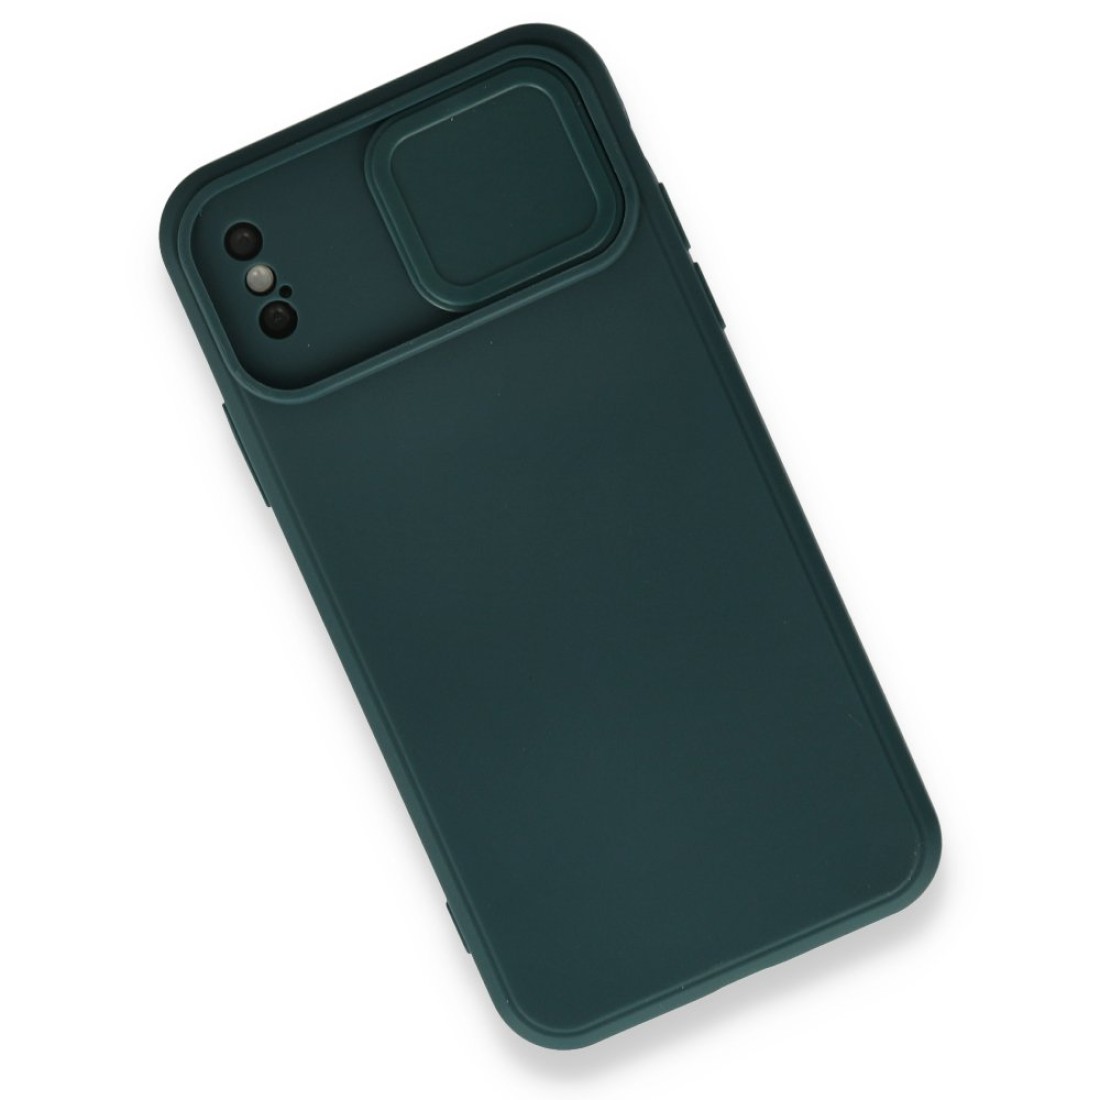 Apple iPhone XS Kılıf Color Lens Silikon - Yeşil